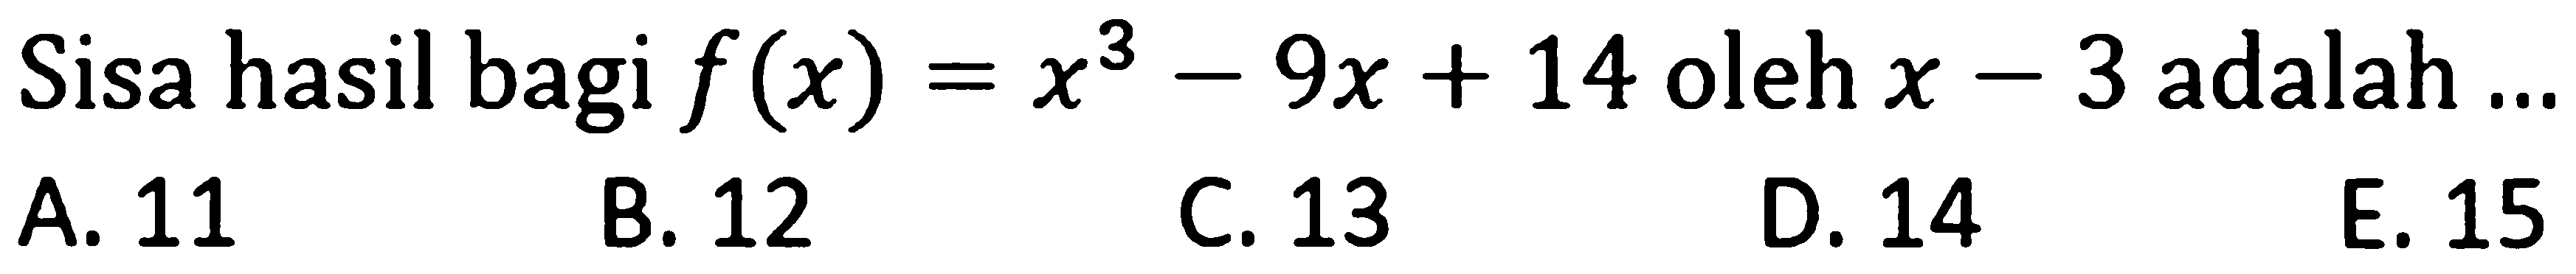 Sisa hasil bagi f(x)=x^3-9x+14 oleh x-3 adalah ...